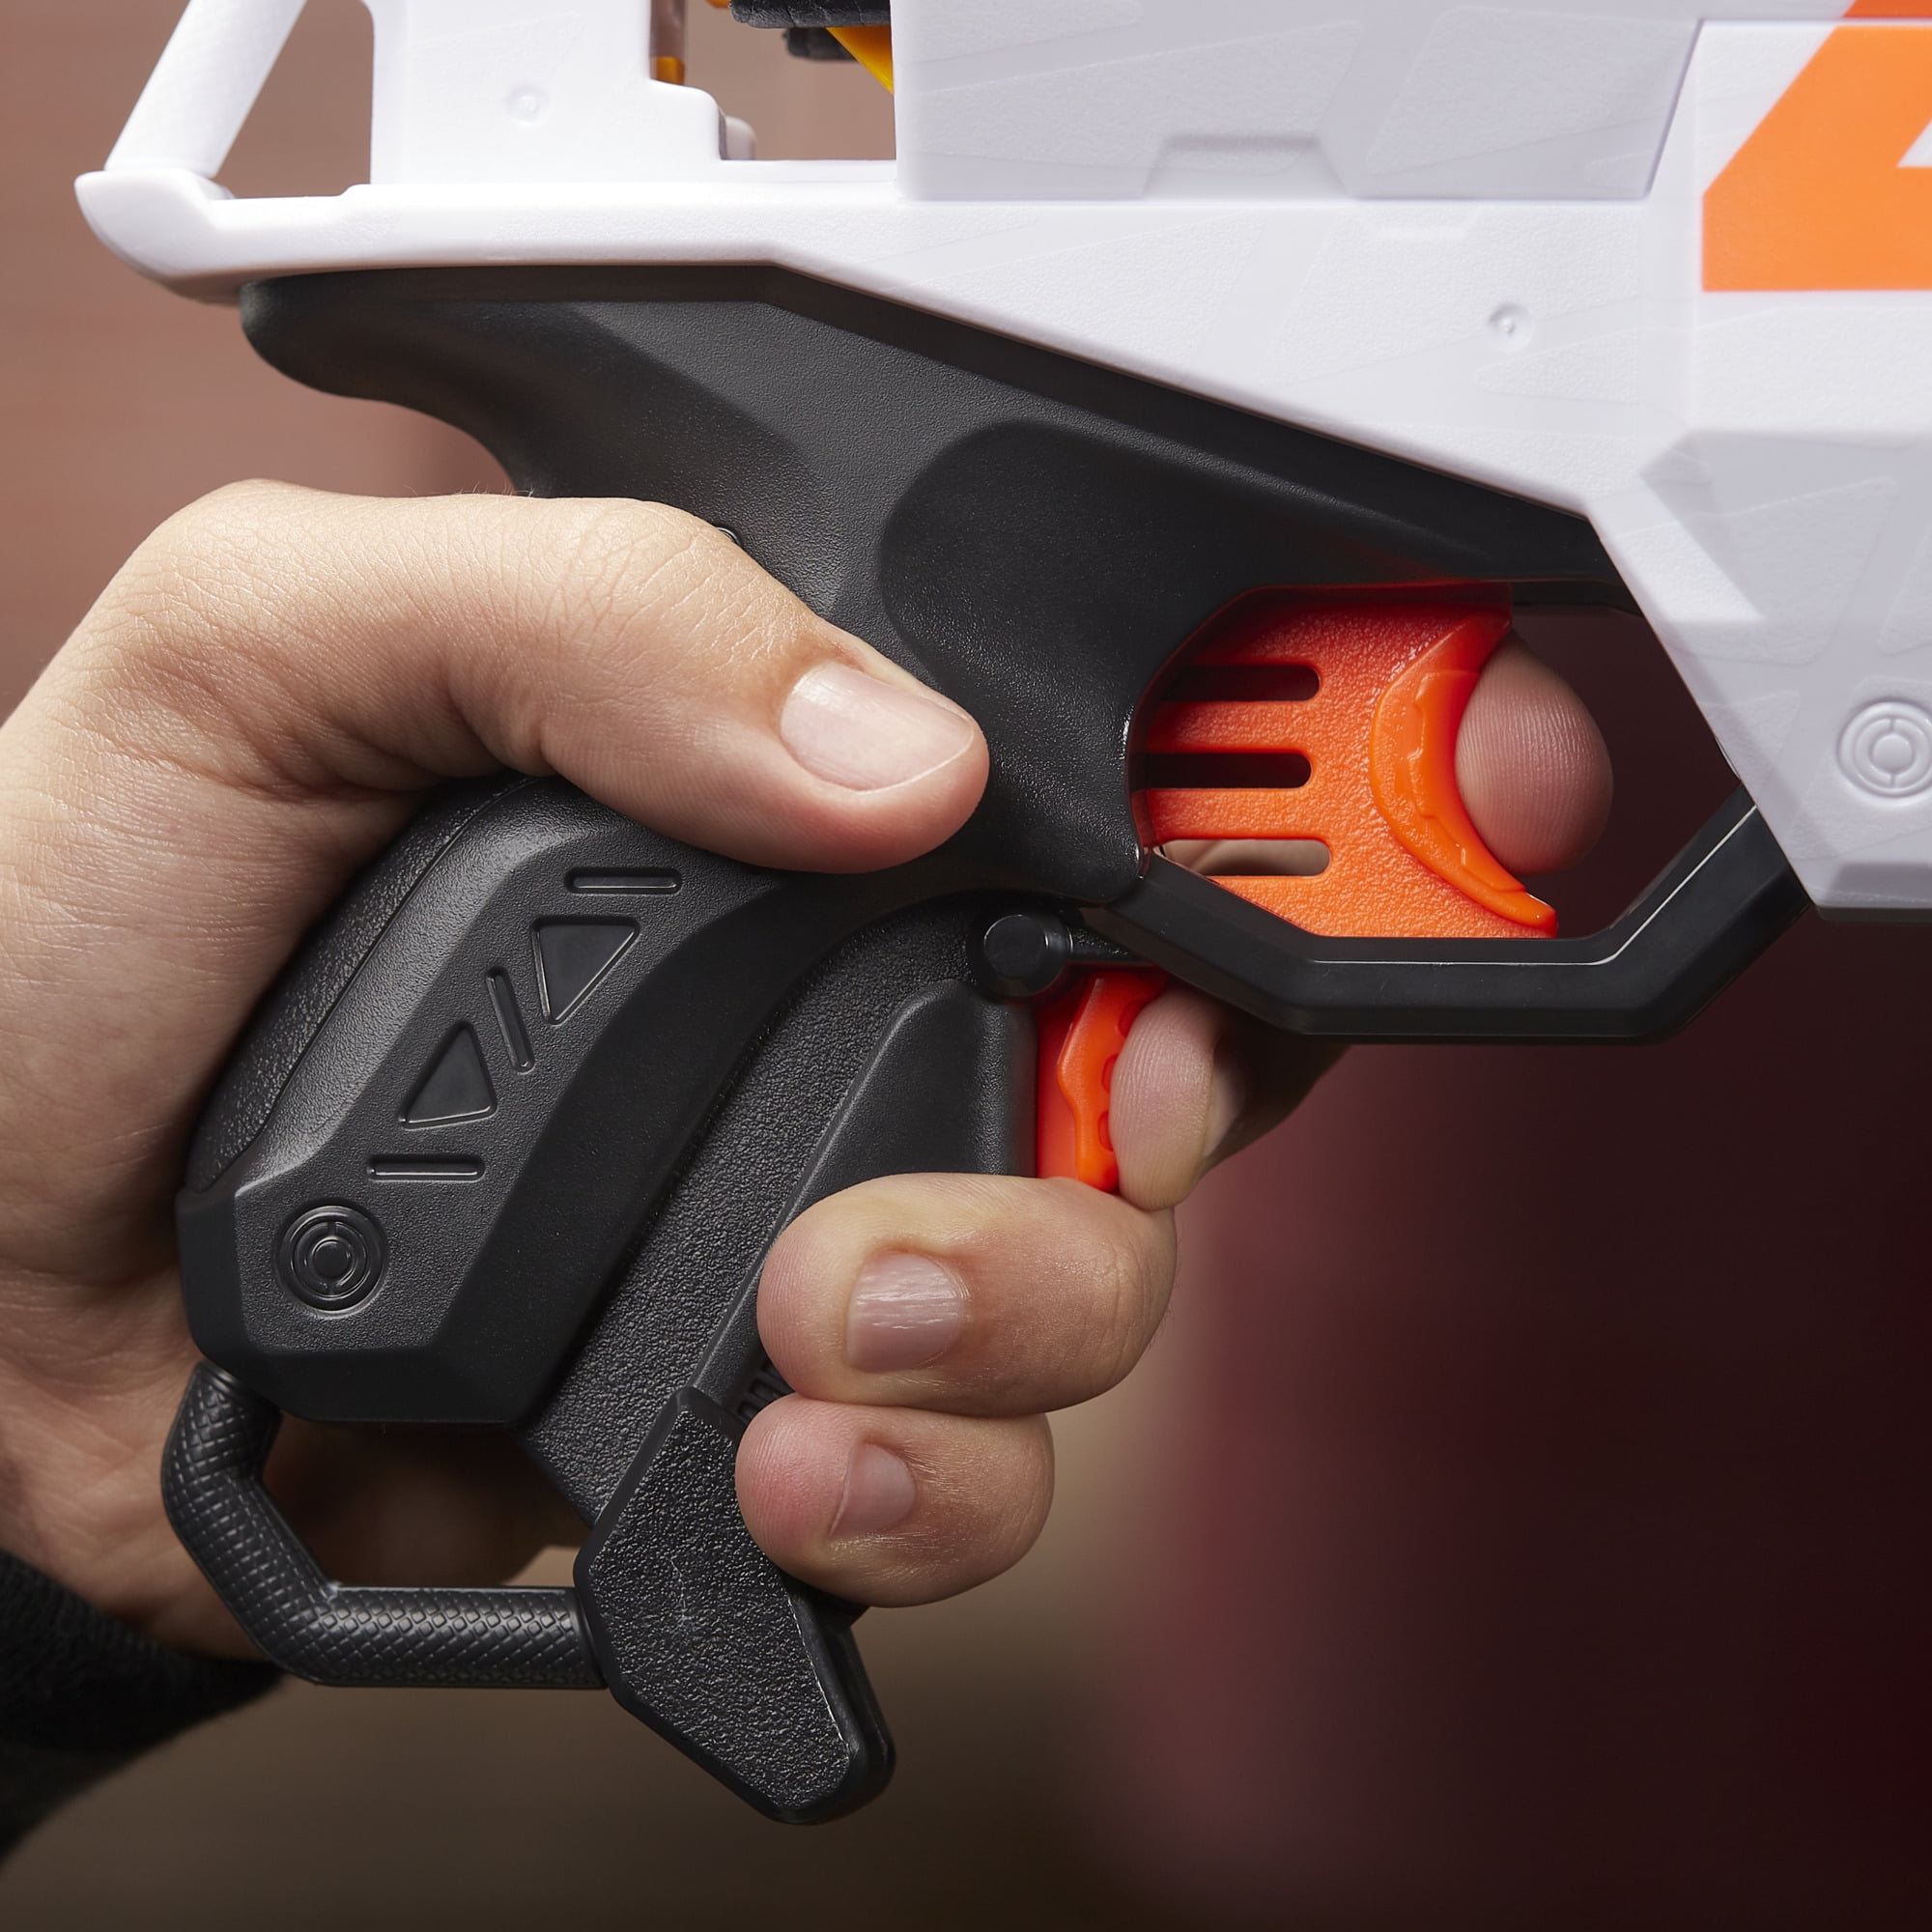 Pistolet Nerf Ultra Two 2 électrique - NERF